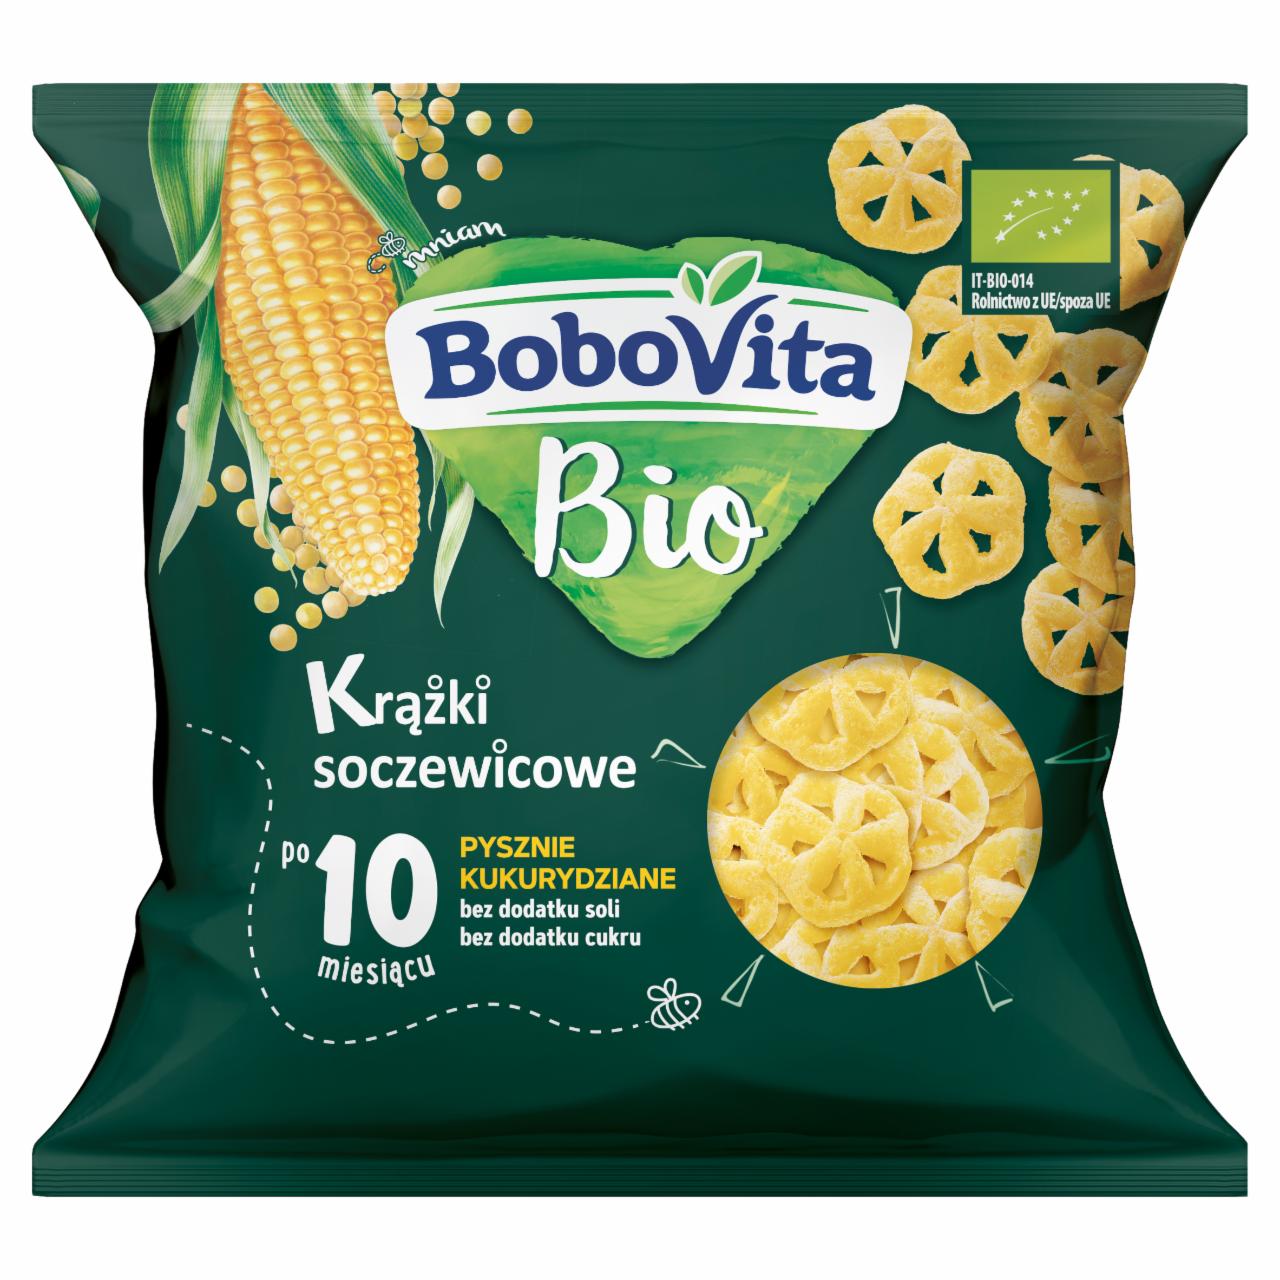 Zdjęcia - BoboVita Bio Krążki soczewicowe pysznie kukurydziane po 10 miesiącu 20 g